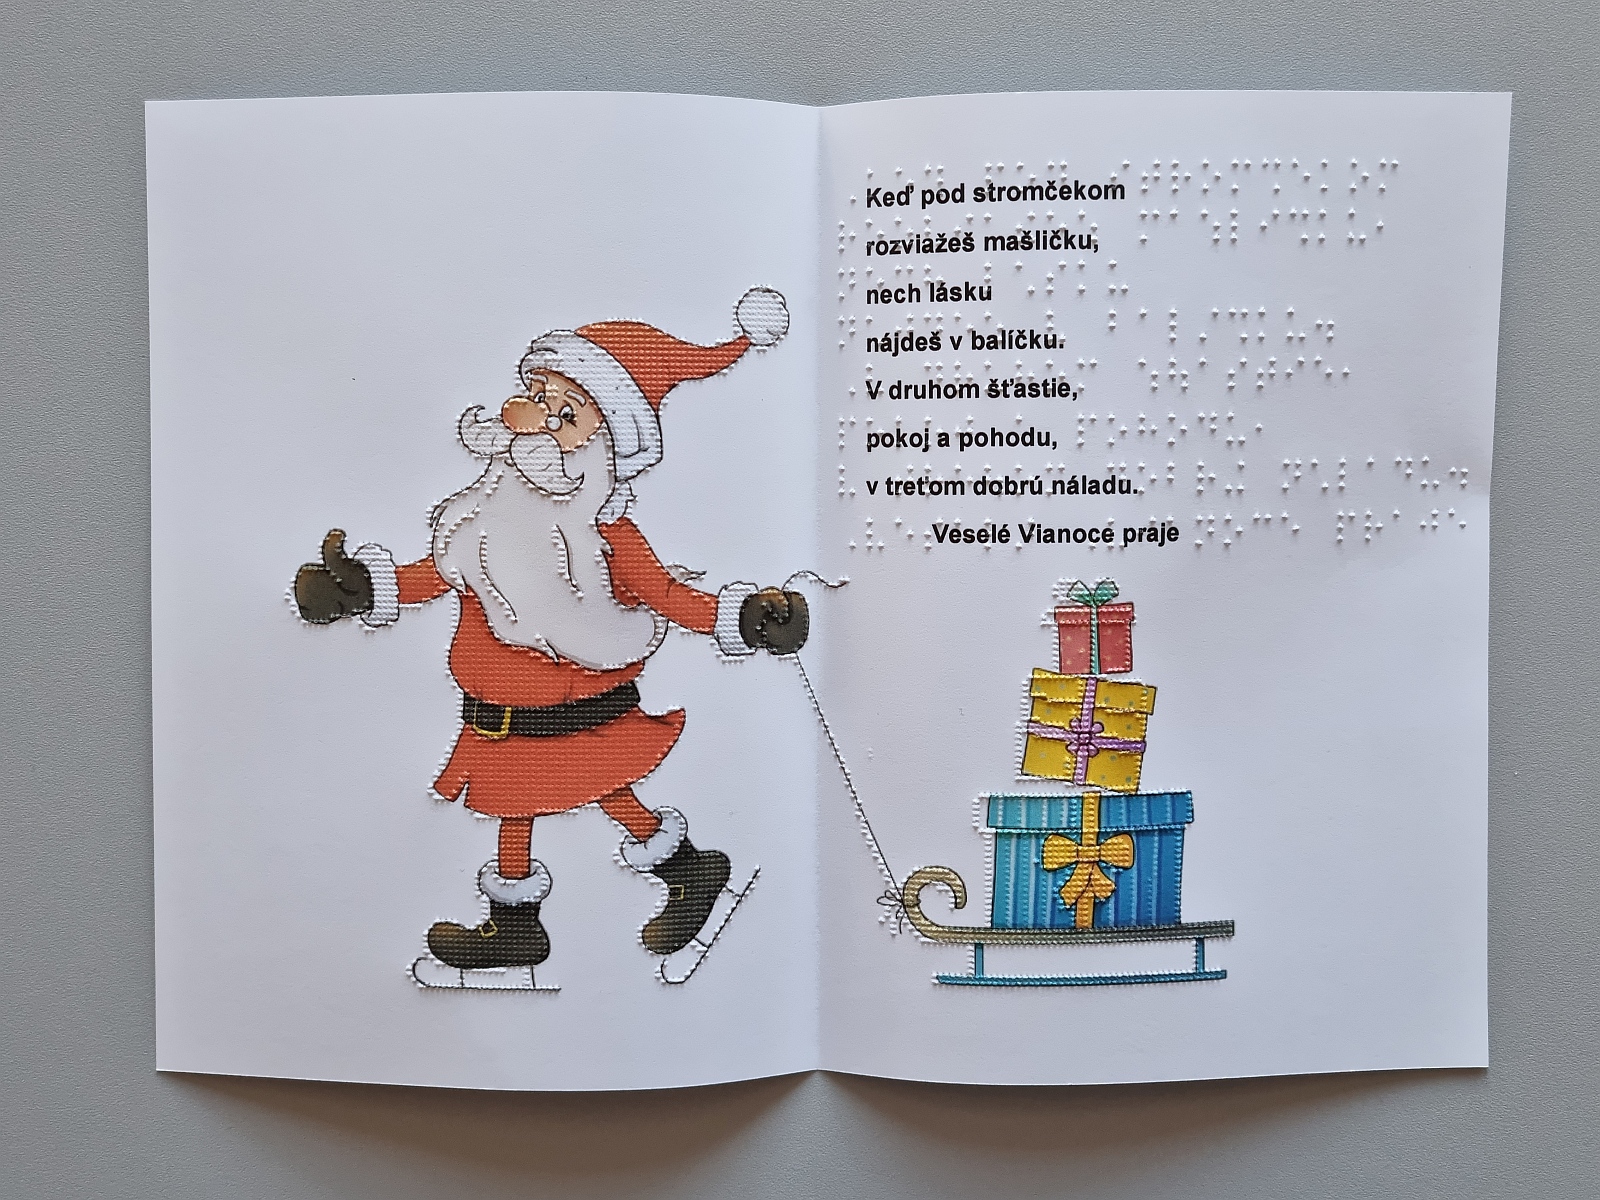 Vianočná pohľadnica, na farebnom obrázku je vyobrazený Mikuláš v čiapke s brmbolcom. Mikuláš za sebou ťahá sane s darčekmi. Text v braili aj čiernotlači.